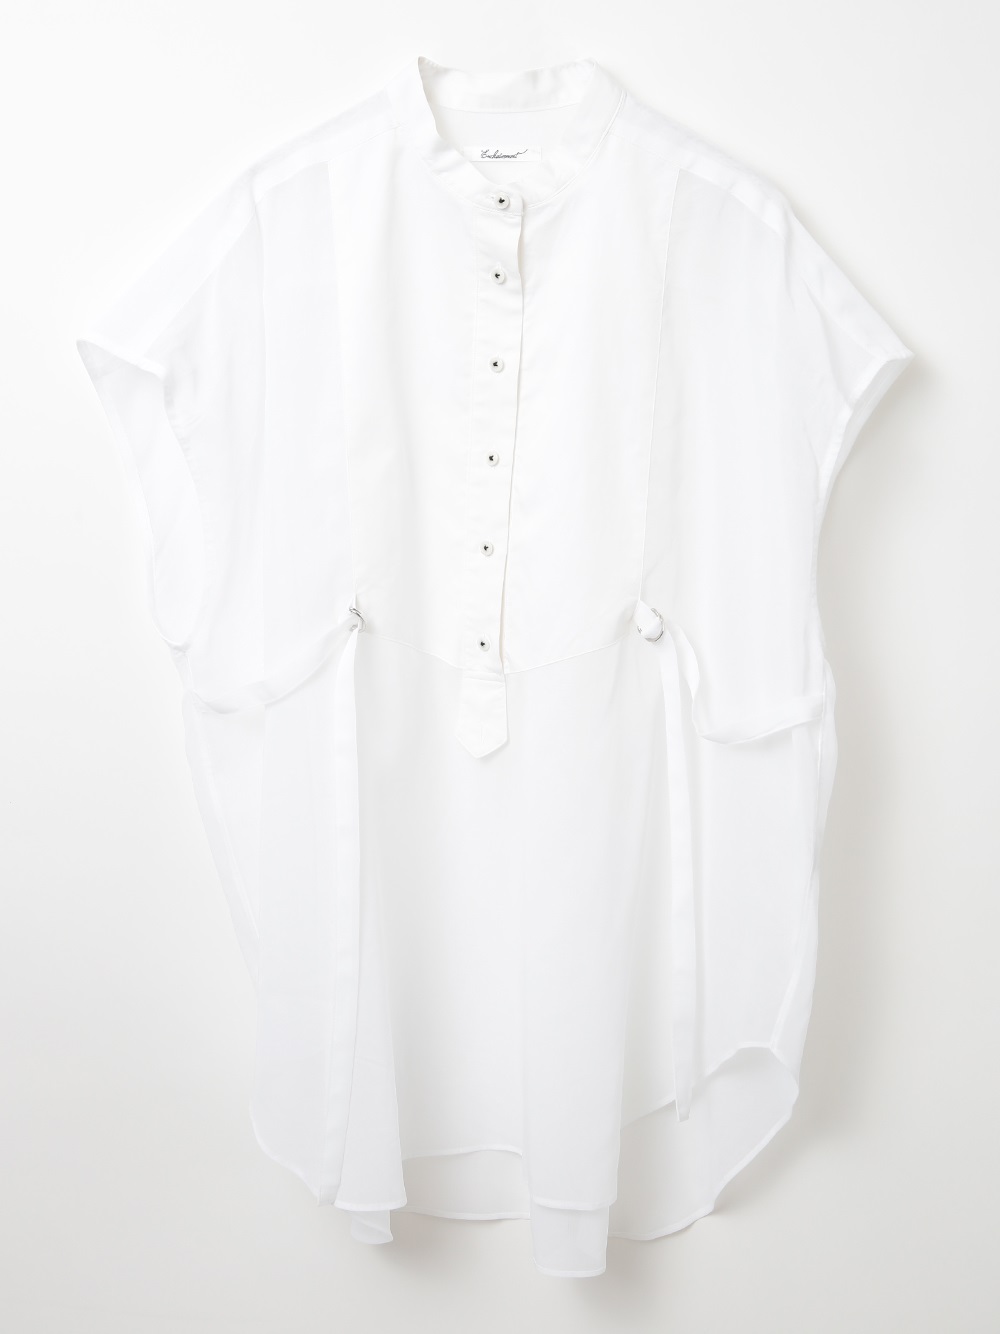 Cotton Sleeveless Shirt(01オフホワイト-フリー)